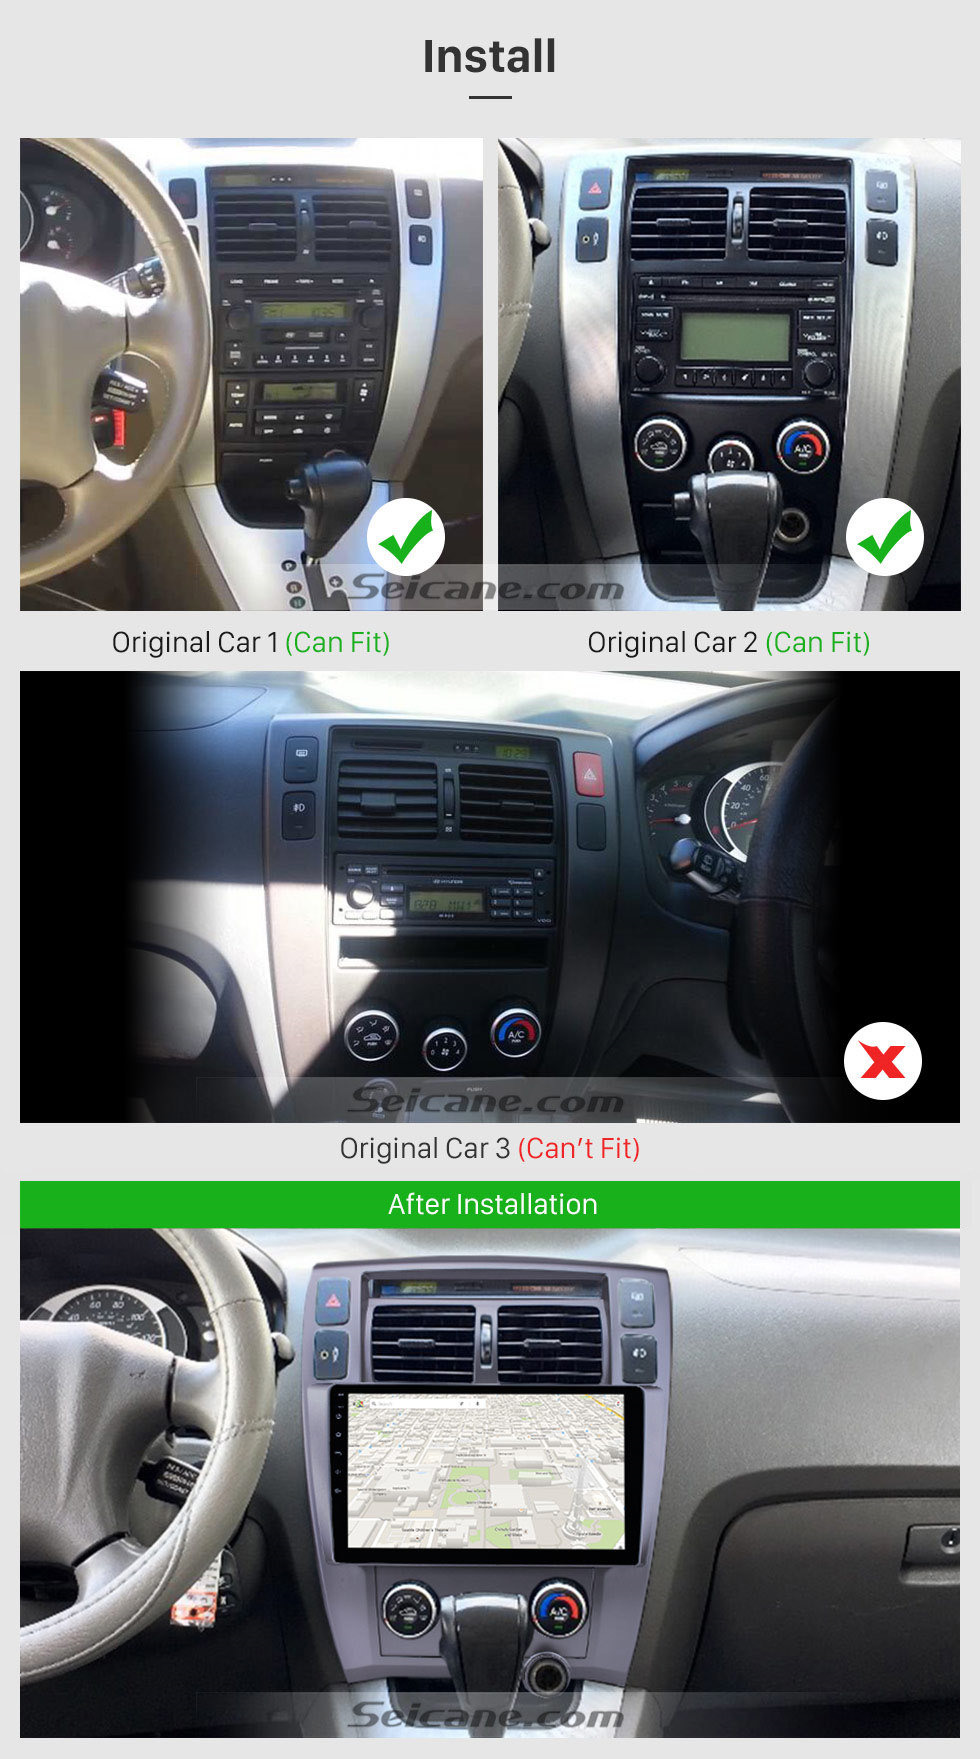 Seicane 10,1 pouces Android 10.0 HD Radio à écran tactile pour 2006-2013 Hyundai Tucson LHD GPS navigation voiture stéréo Bluetooth Support miroir lien OBD2 3G WiFi DVR 1080P Contrôle du volant vidéo